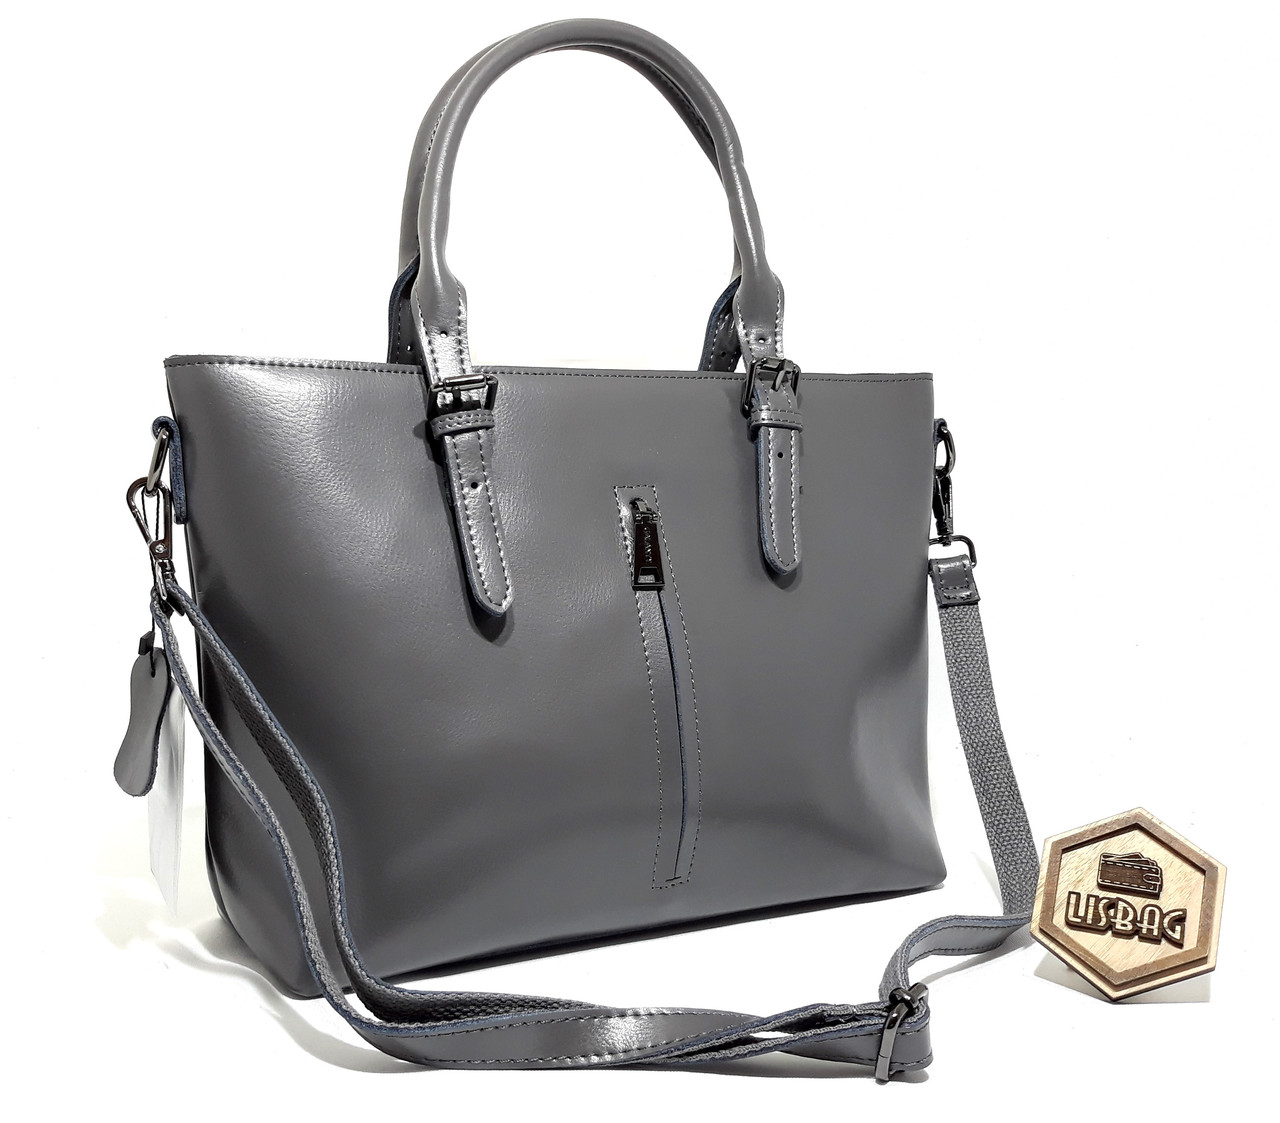 Велика класна жіноча сумка Galanty з натуральної шкіри класичного дизайну Сірого кольору